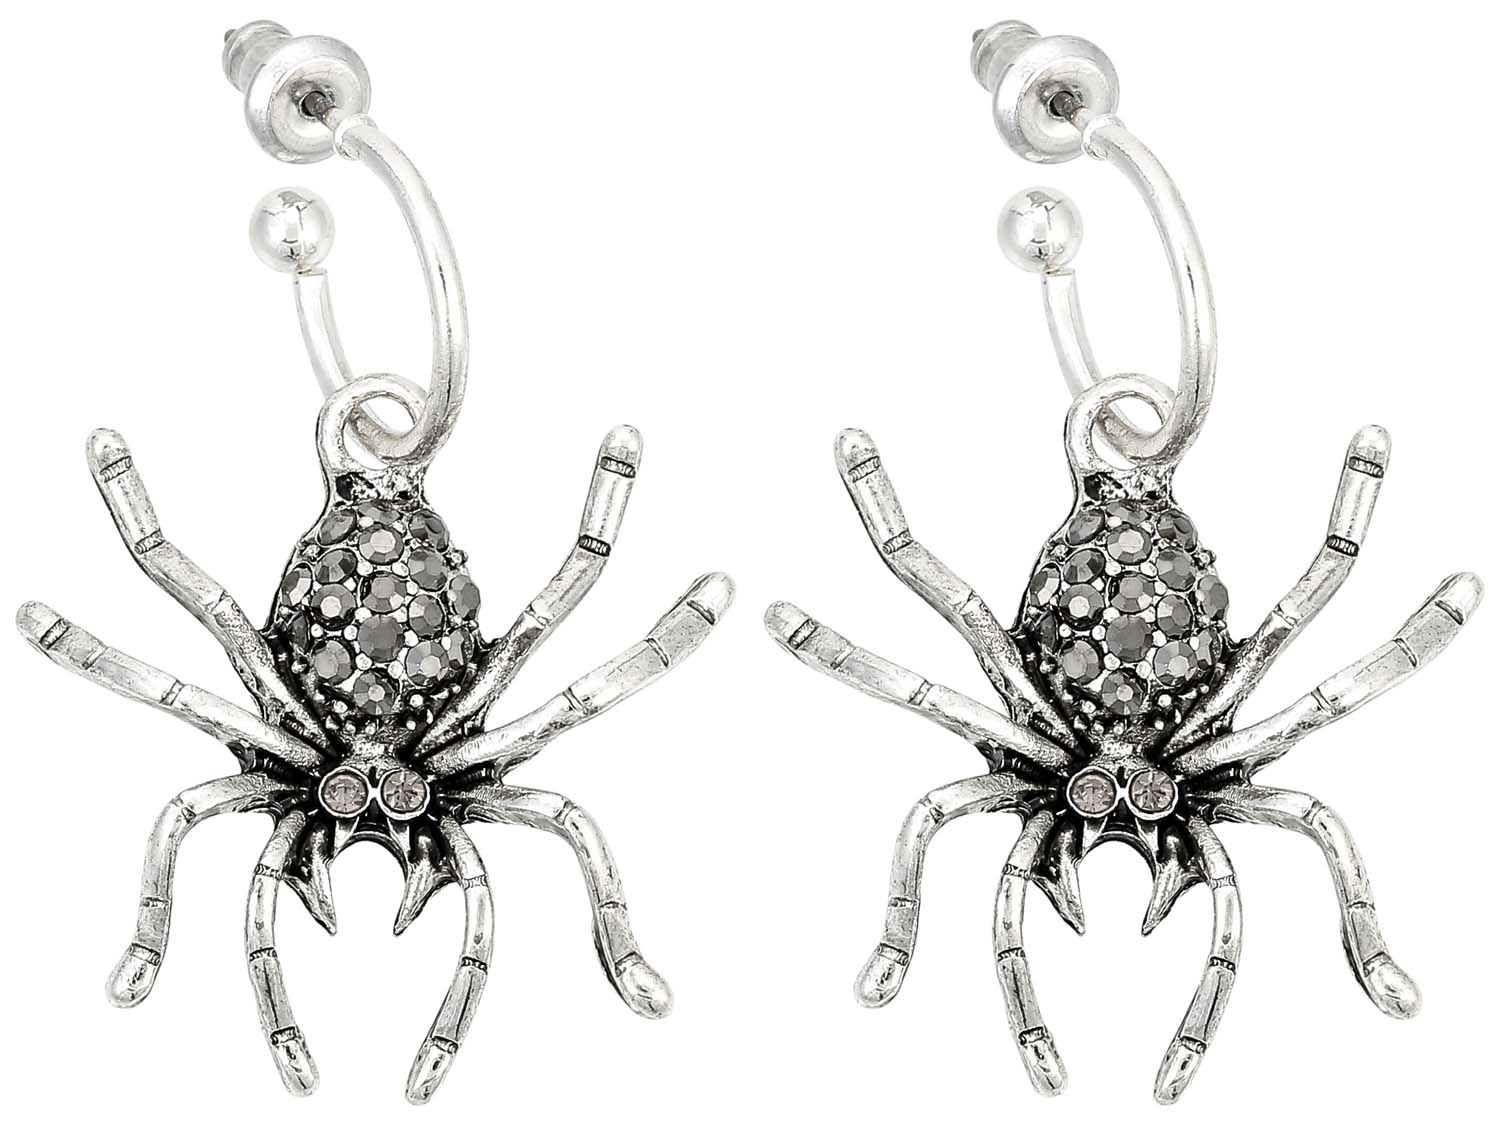 Aros - Silver Spider